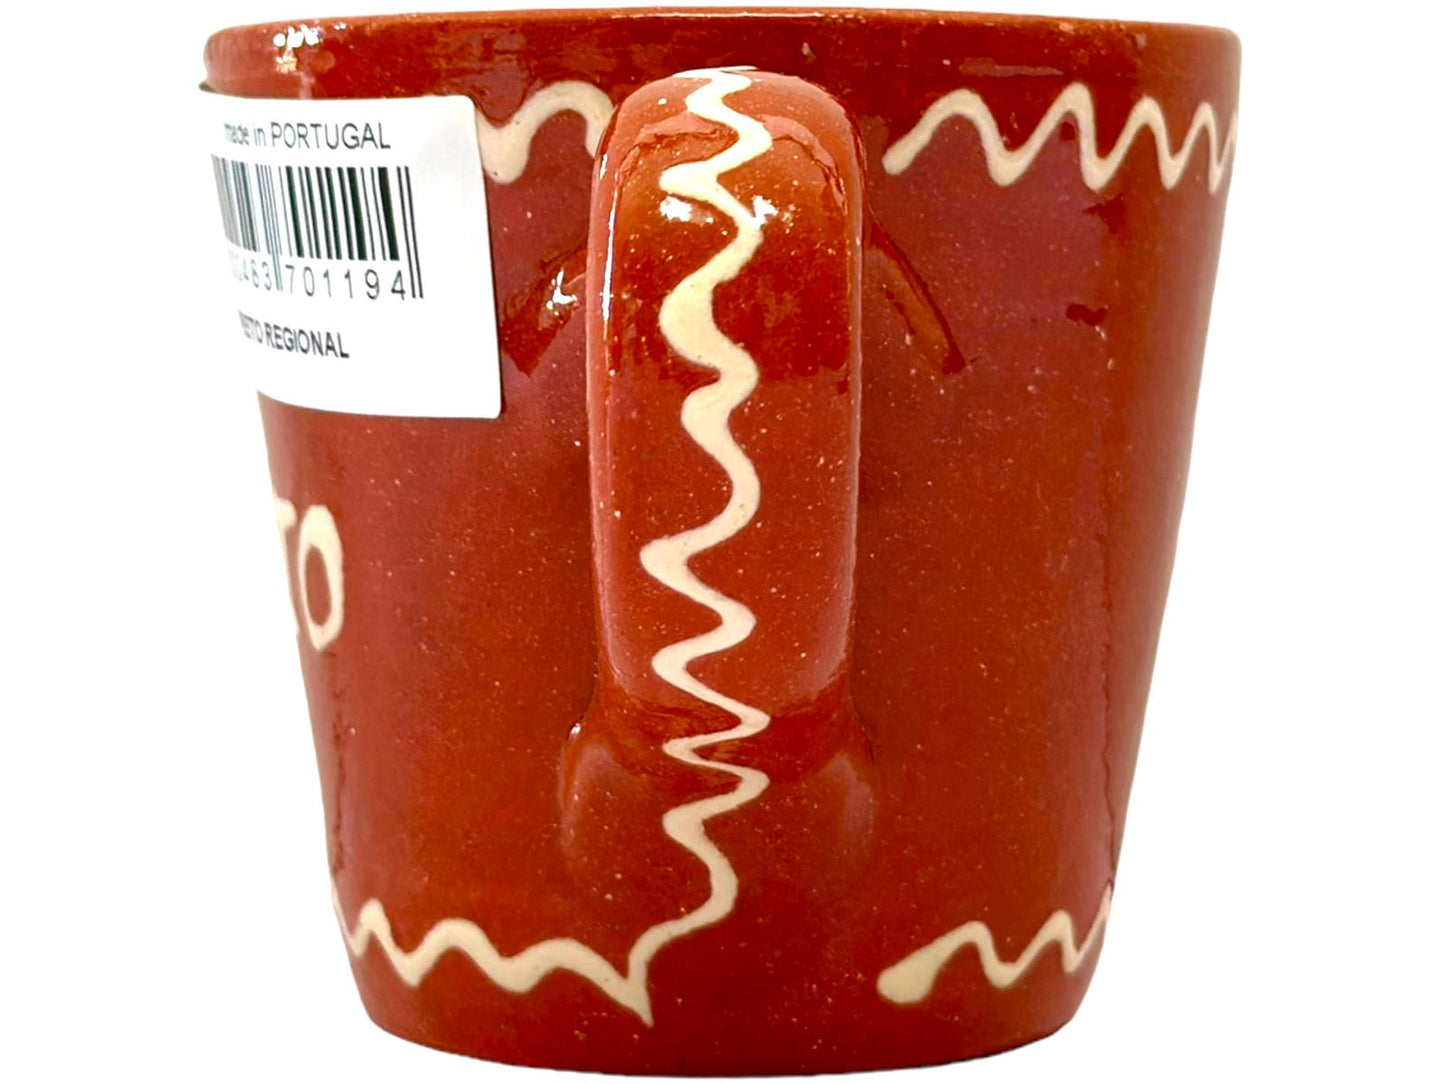 Edgar Picas  Copo Direito Bebe Vinho Tinto Portuguese Terracotta Mug 8.5cm x 9cm